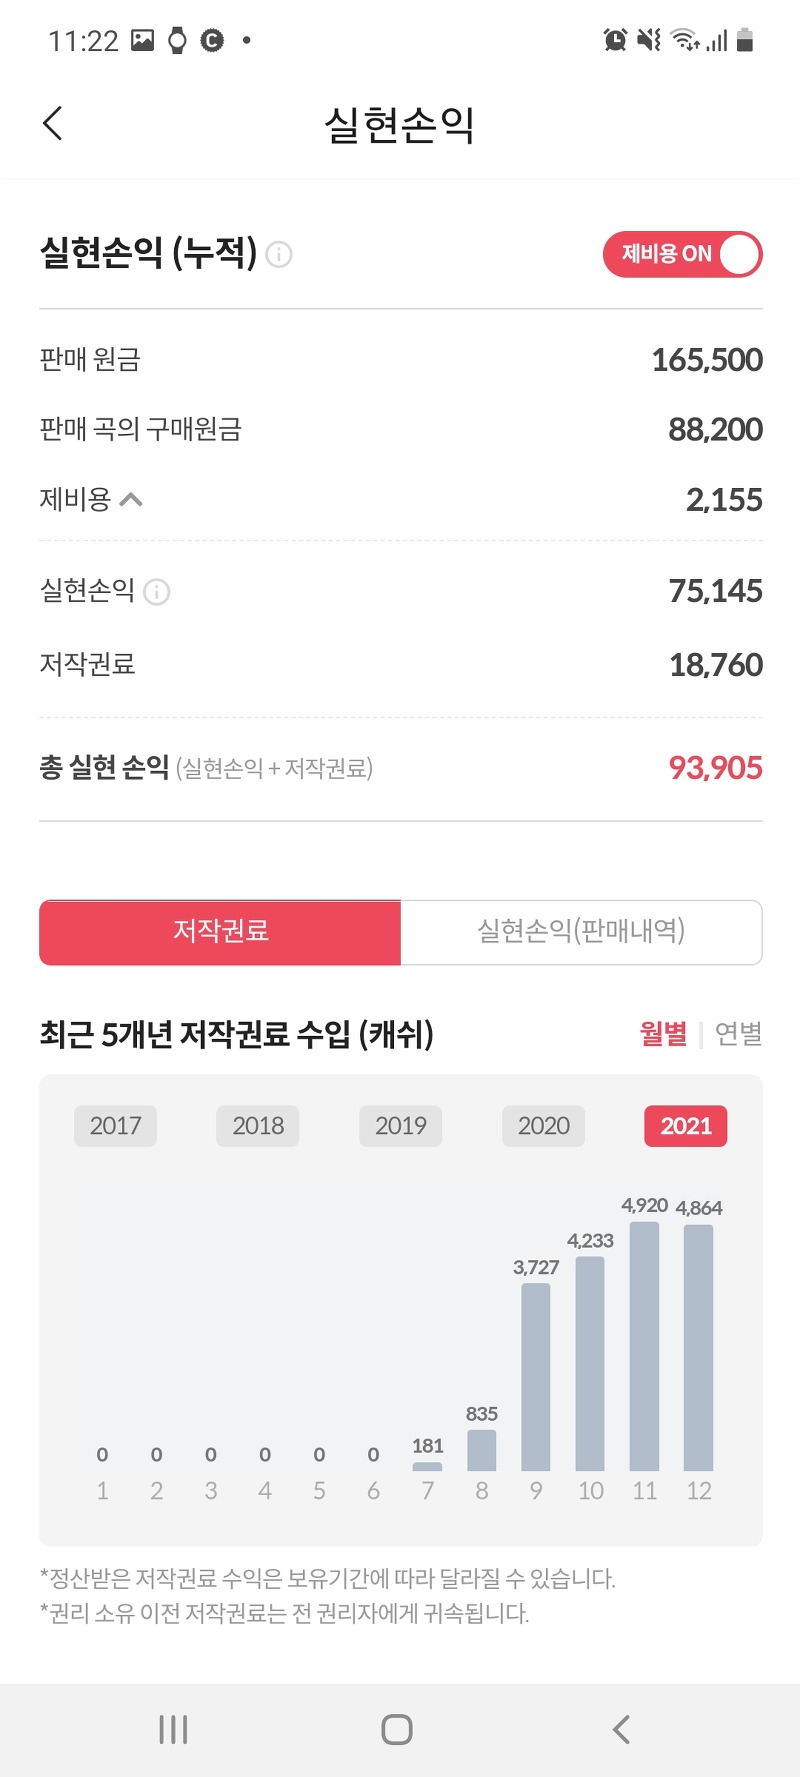 [투자] 뮤직카우 후기 120만원 (기간 6개월, 2021년 정리)